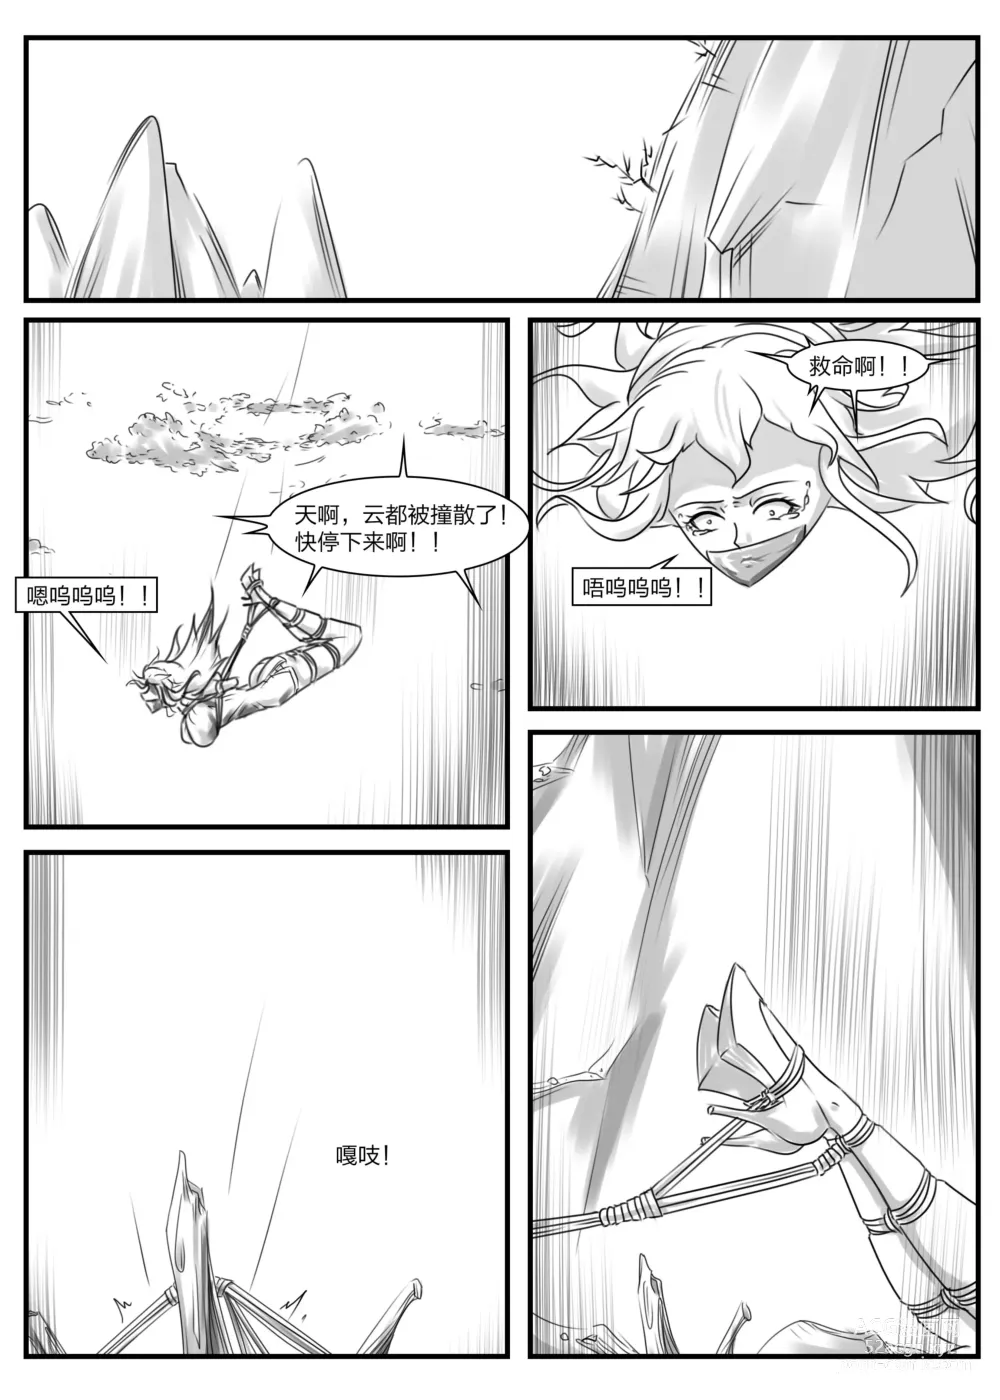 Page 7 of doujinshi 《被困游戏世界2》